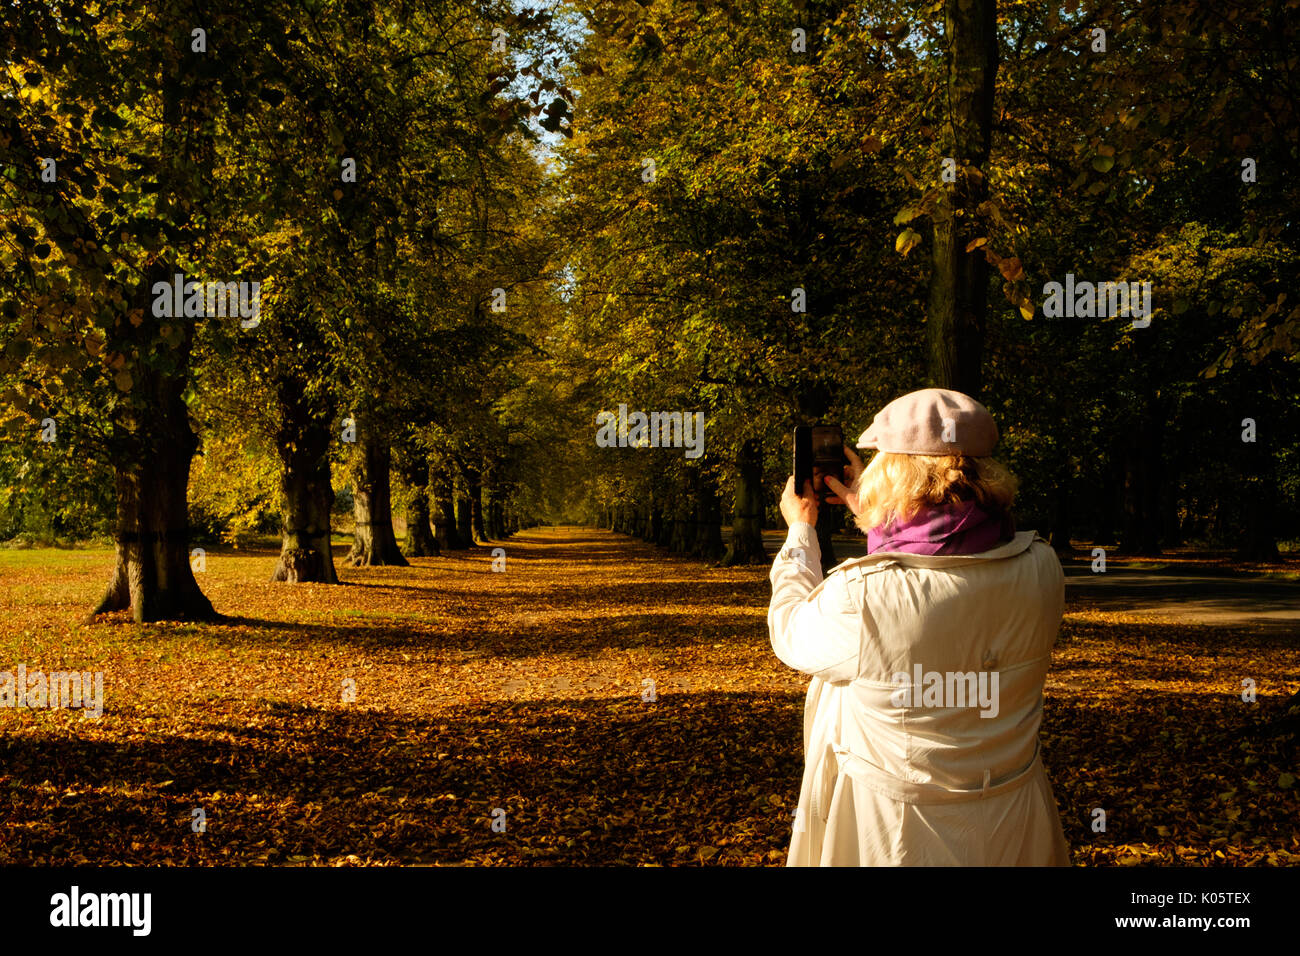 Woman taking photo of autumn trees Stock Photo